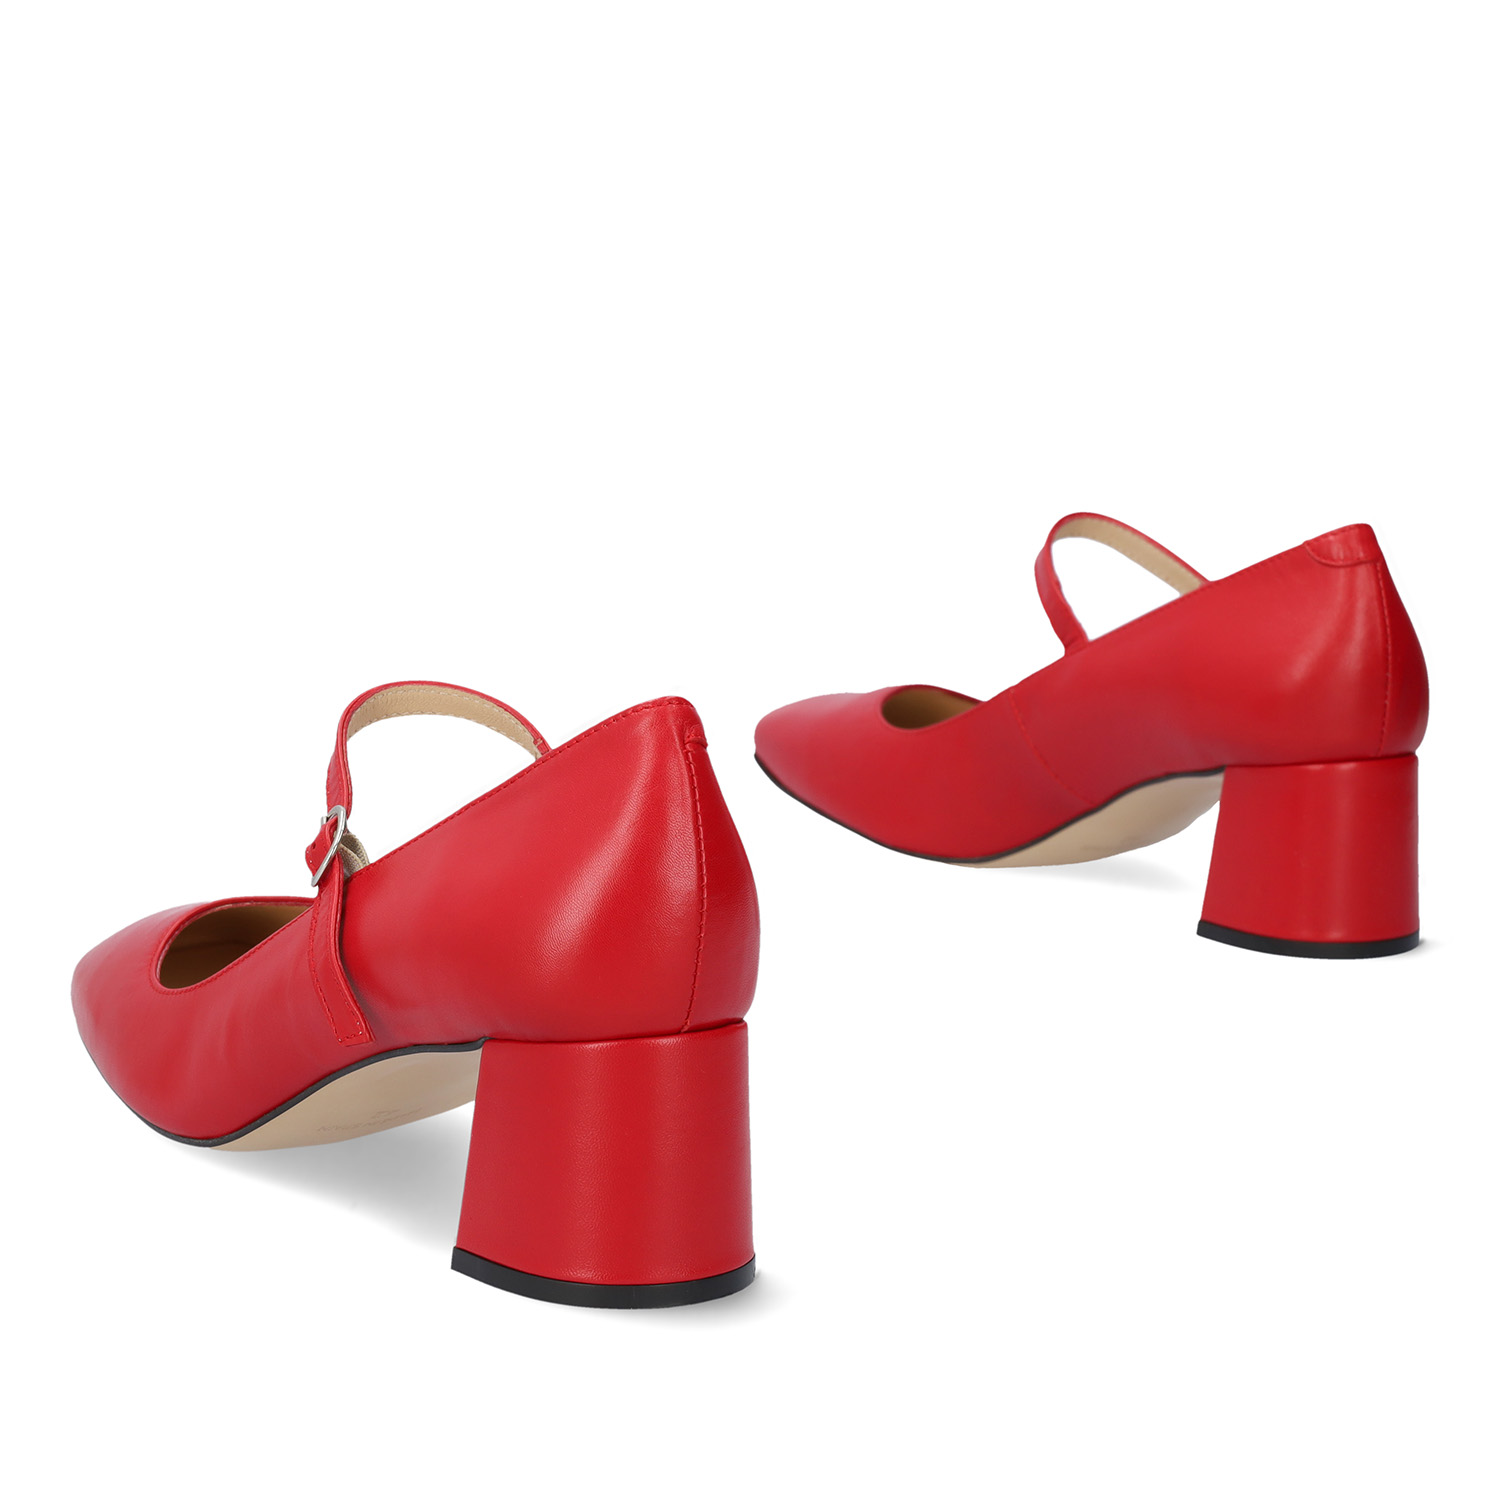 Buty na obcasie lakierowane we wzór Czerwone 